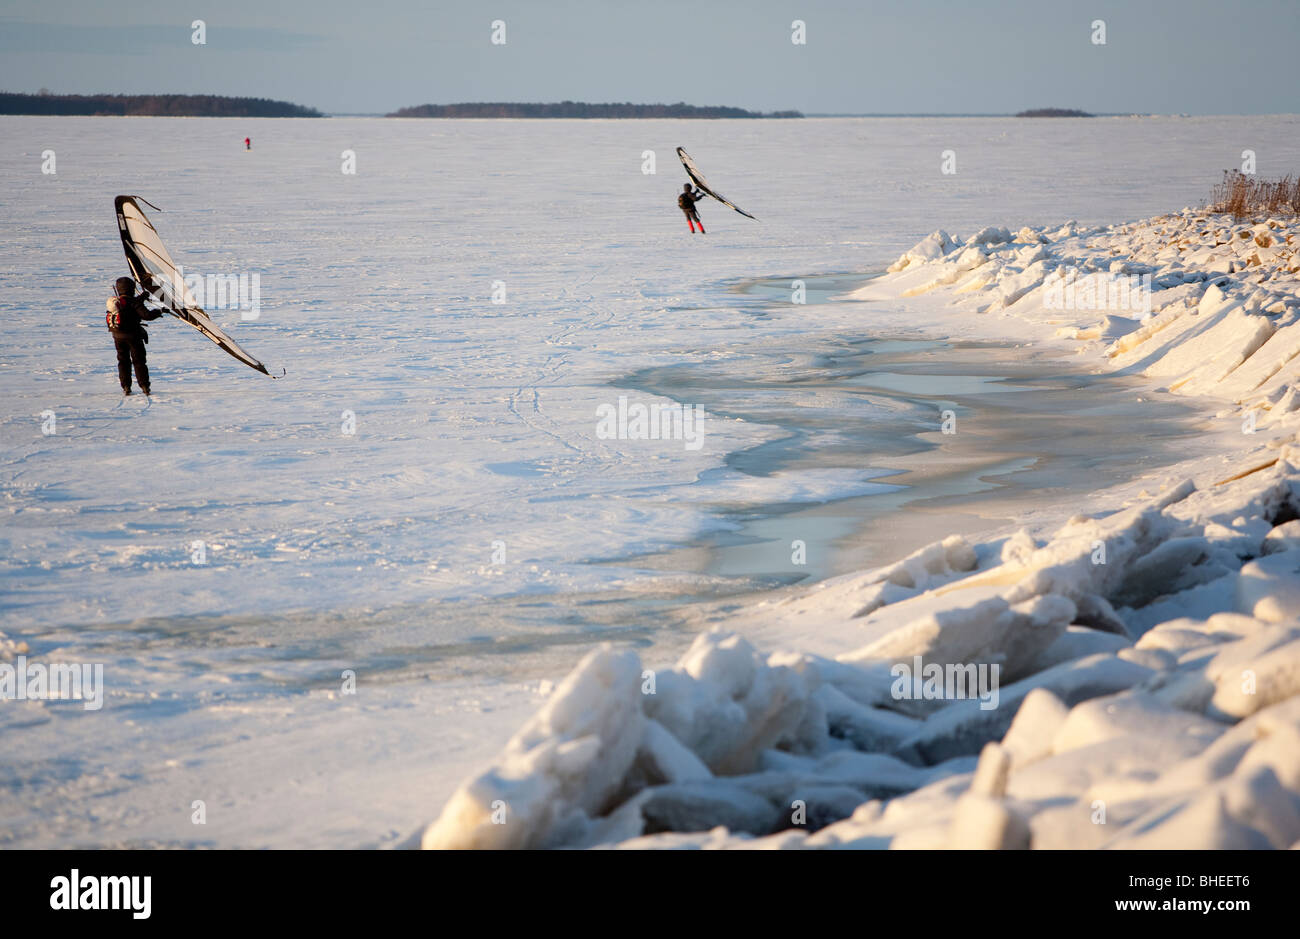 Ski personnes sur la glace de mer à l'aide d'hiver un kitewing, Finlande Banque D'Images